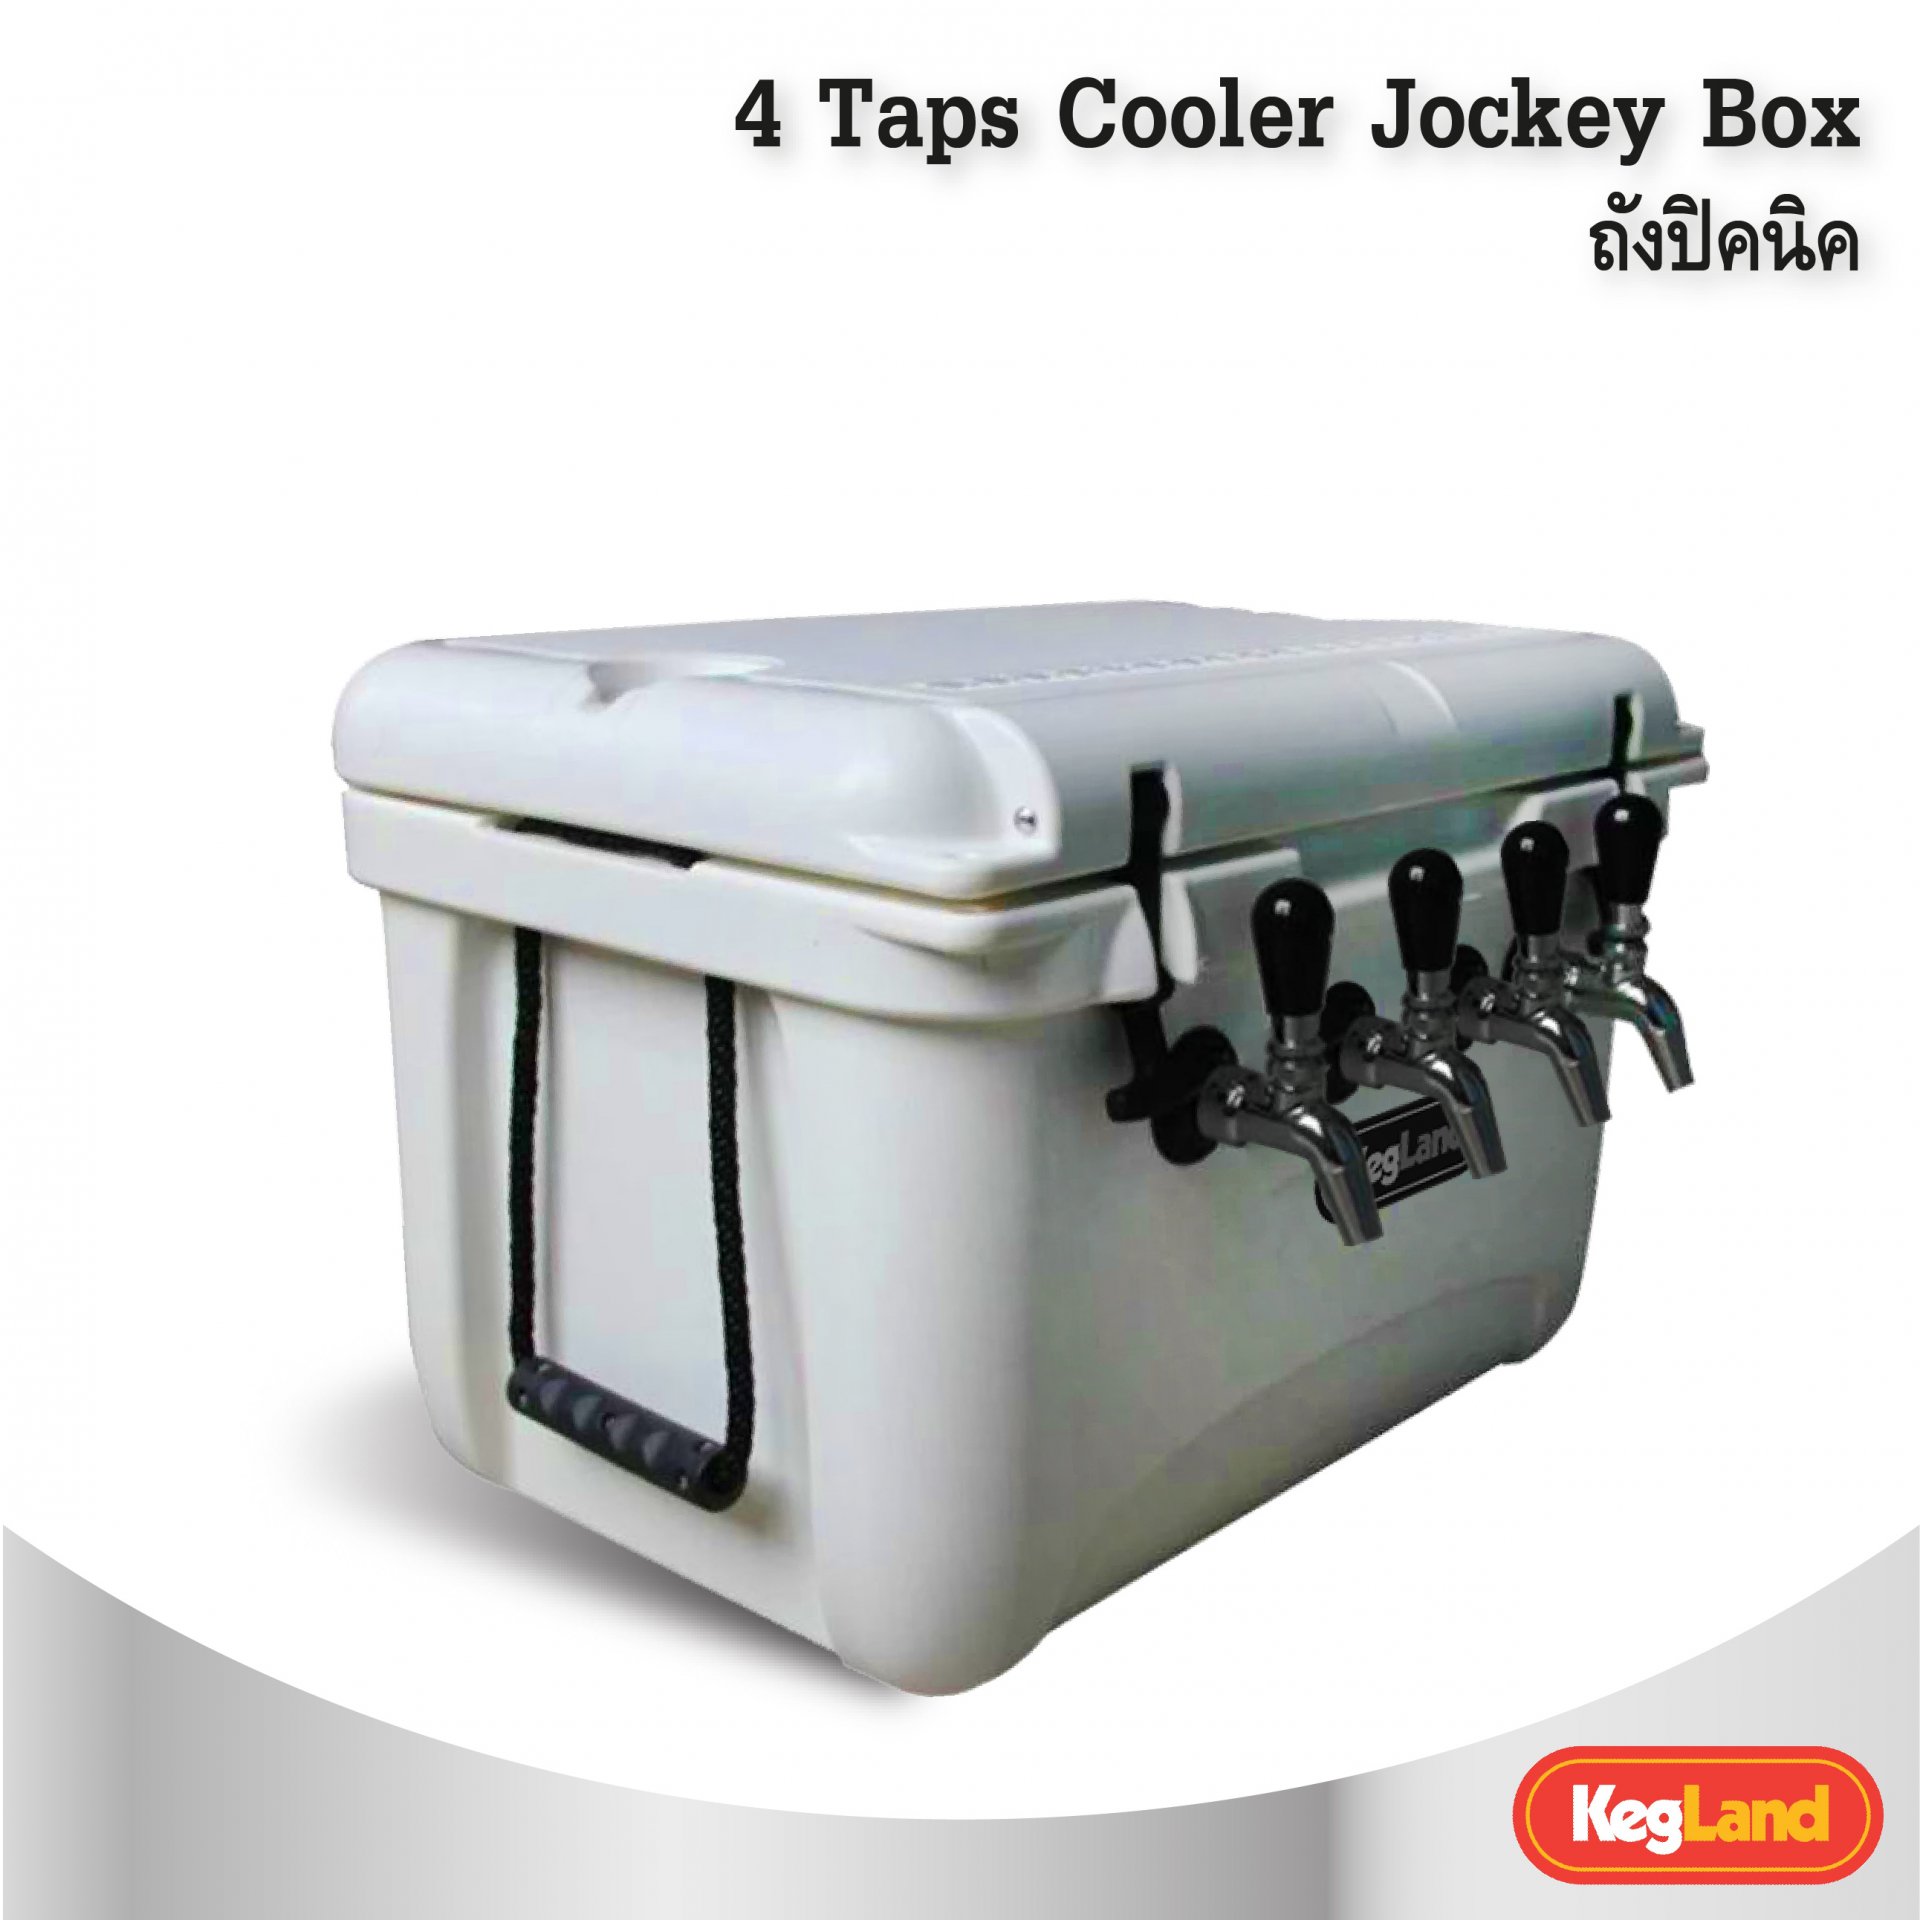 ถังปิคนิค 4 Taps Cooler Jockey Box